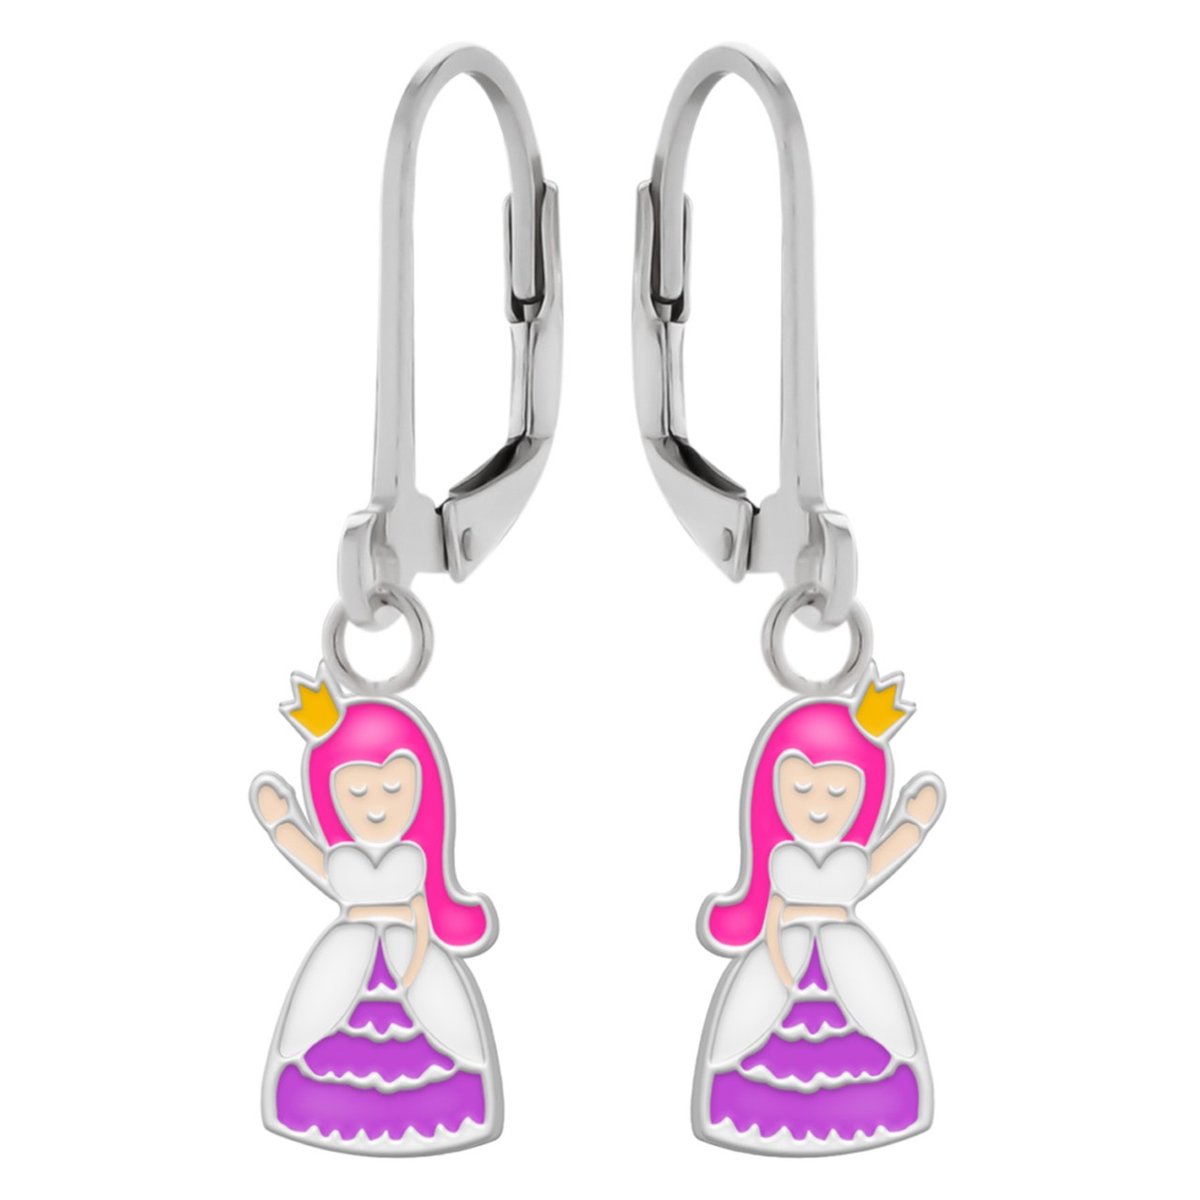 Oorbellen meisje | Zilveren kinderoorbellen | Zilveren oorhangers, zwaaiende prinses met roze haar